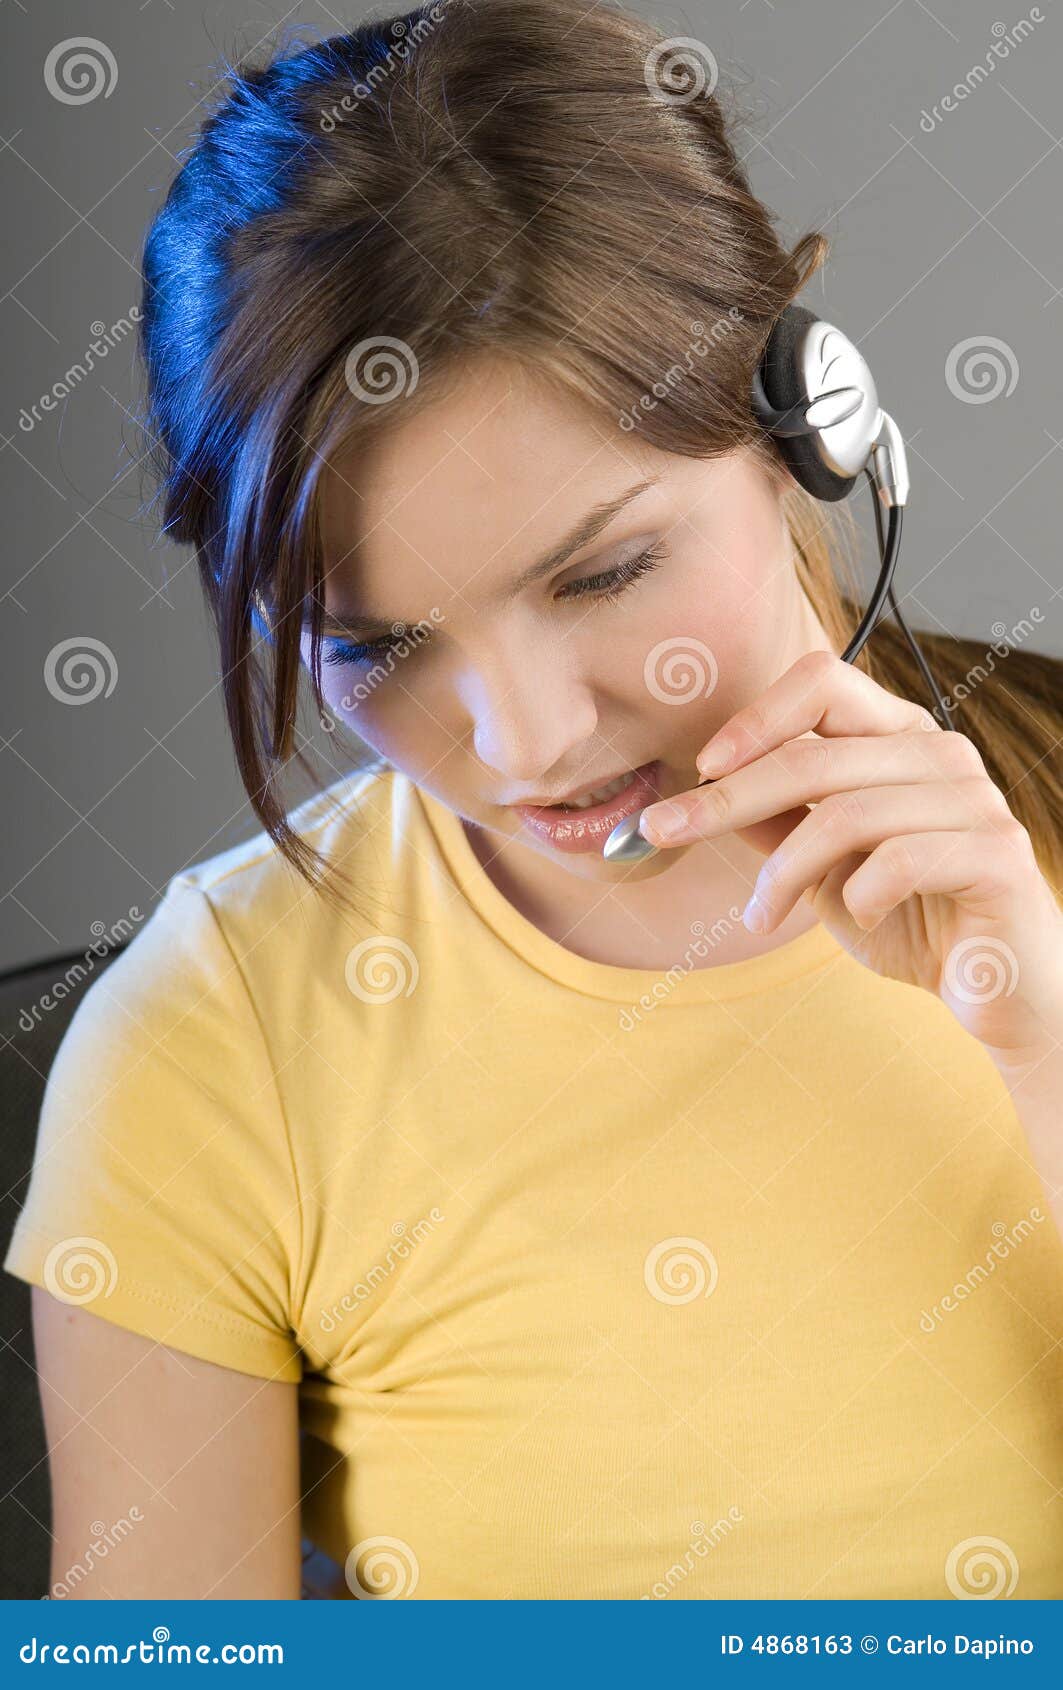 girl with earphone